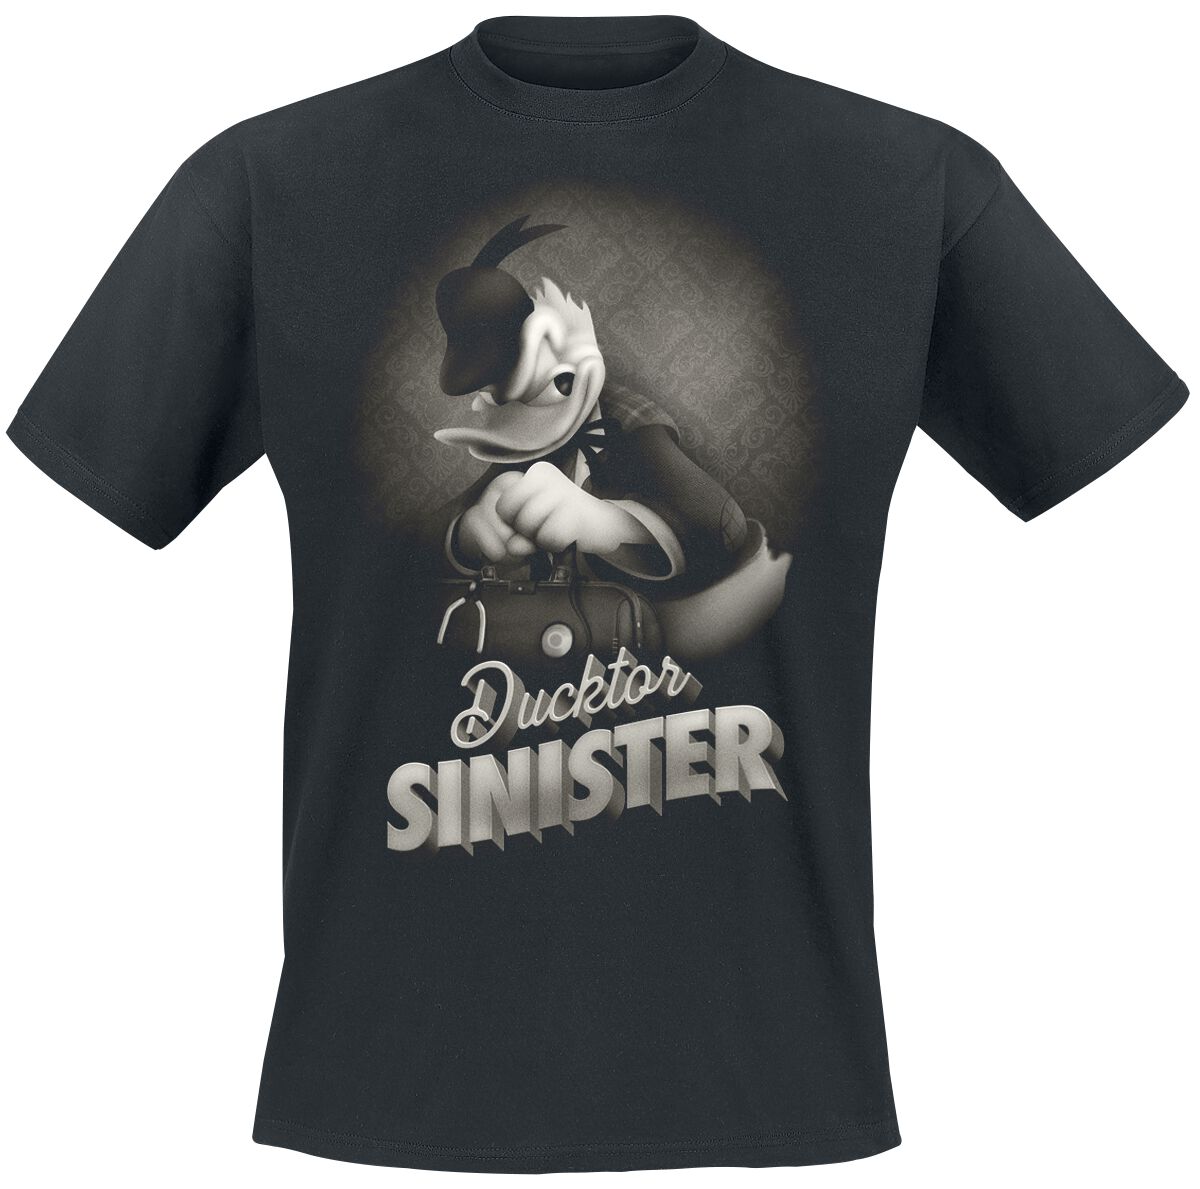 Mickey Mouse - Disney T-Shirt - Donald - Ducktor Sinister - S bis XXL - für Männer - Größe XXL - schwarz  - EMP exklusives Merchandise!